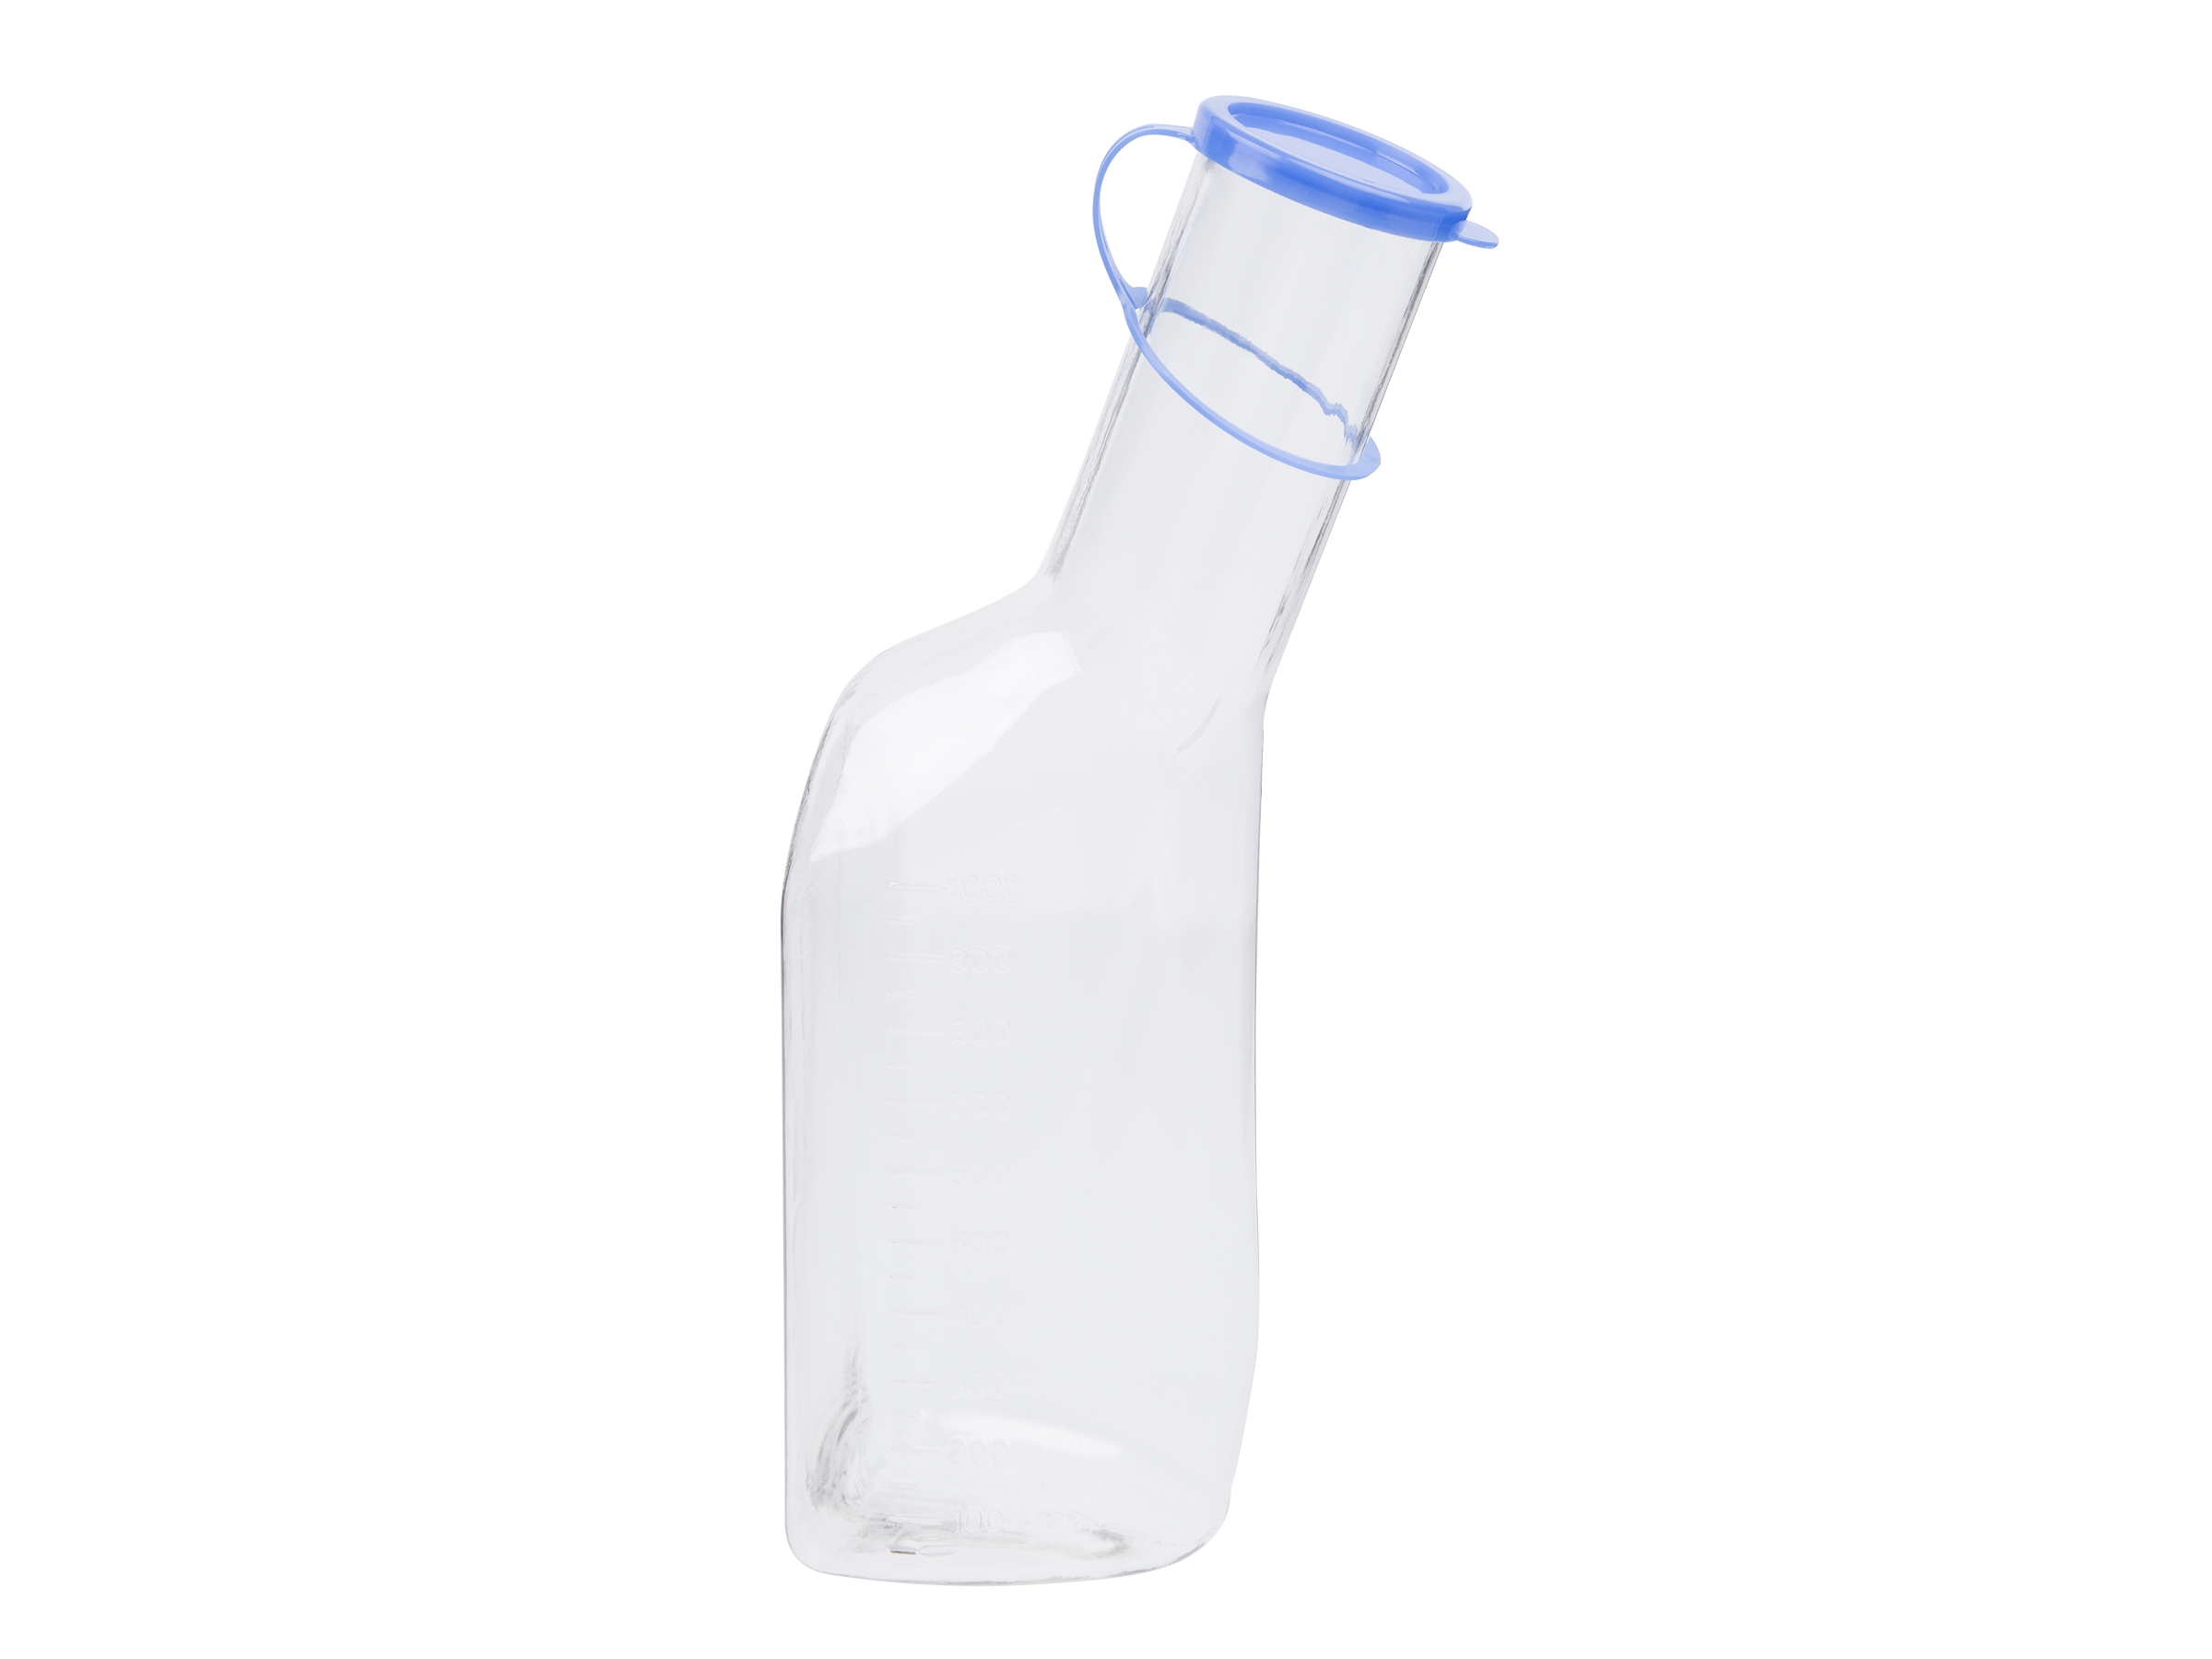 Mediware urinflaske m/lokk, 1 stk.